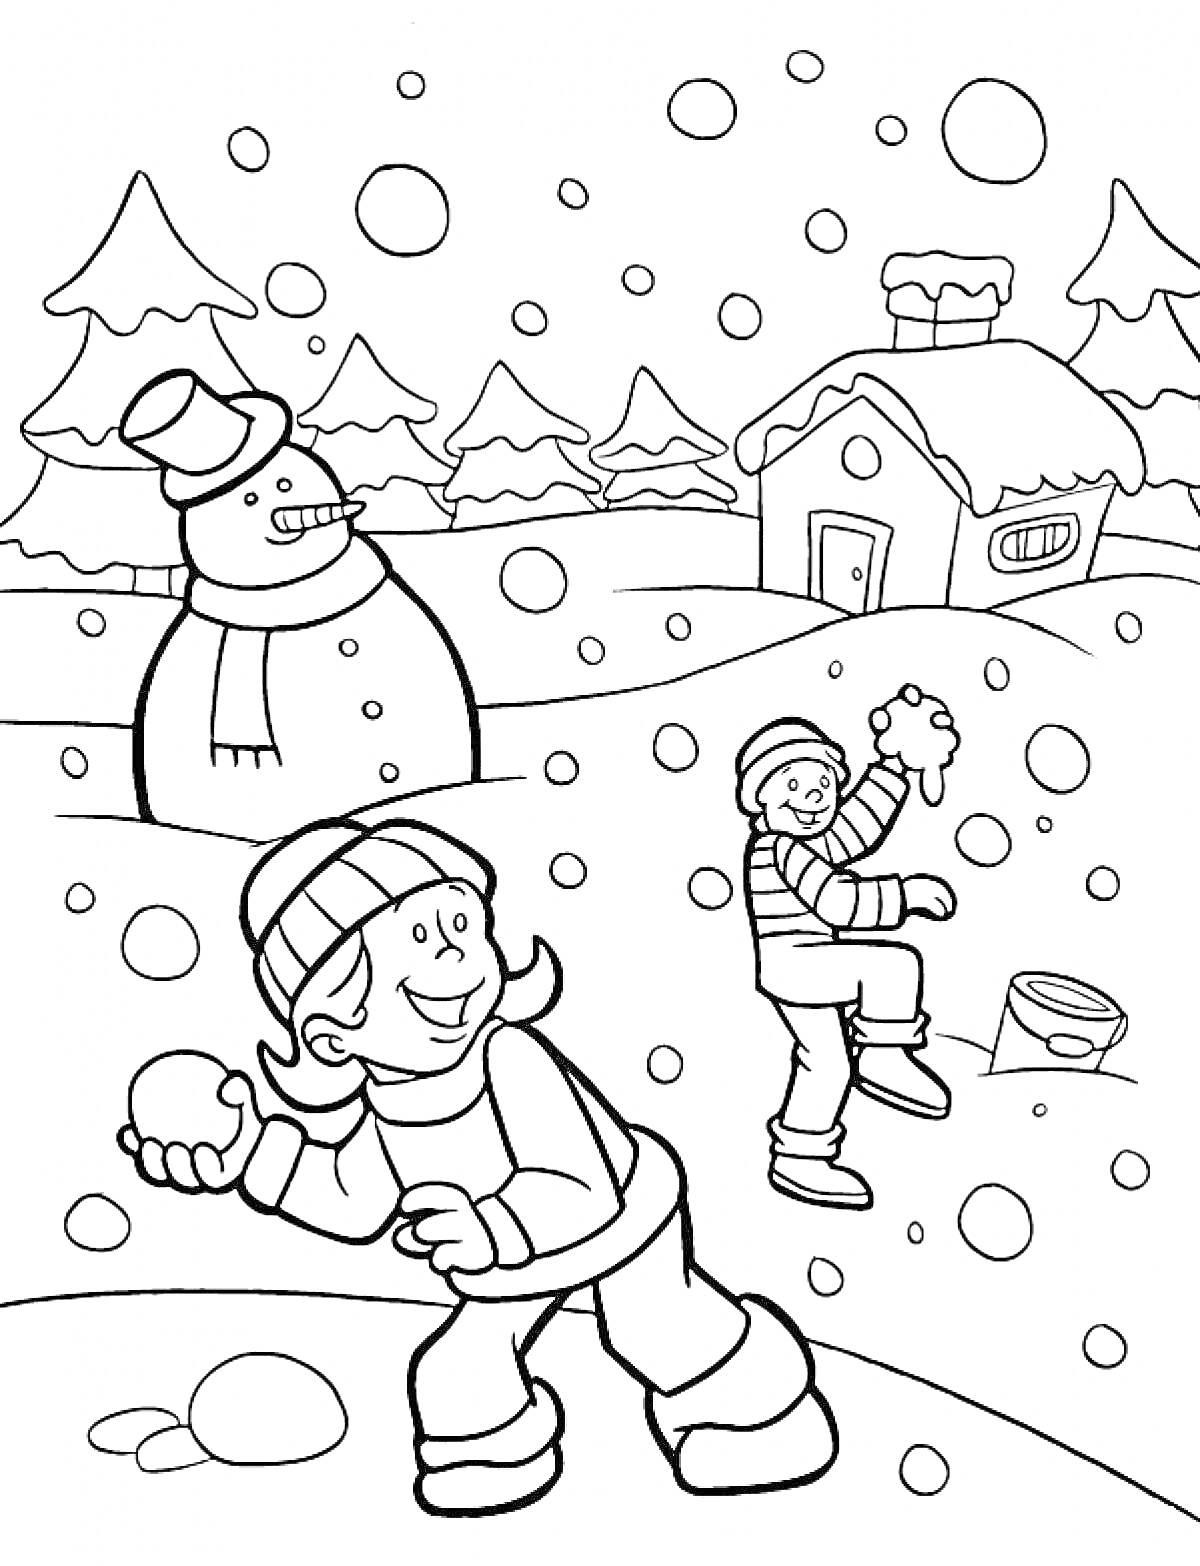 Раскраска Дети играют в снежки возле снежной бабы и домика в зимнем лесу